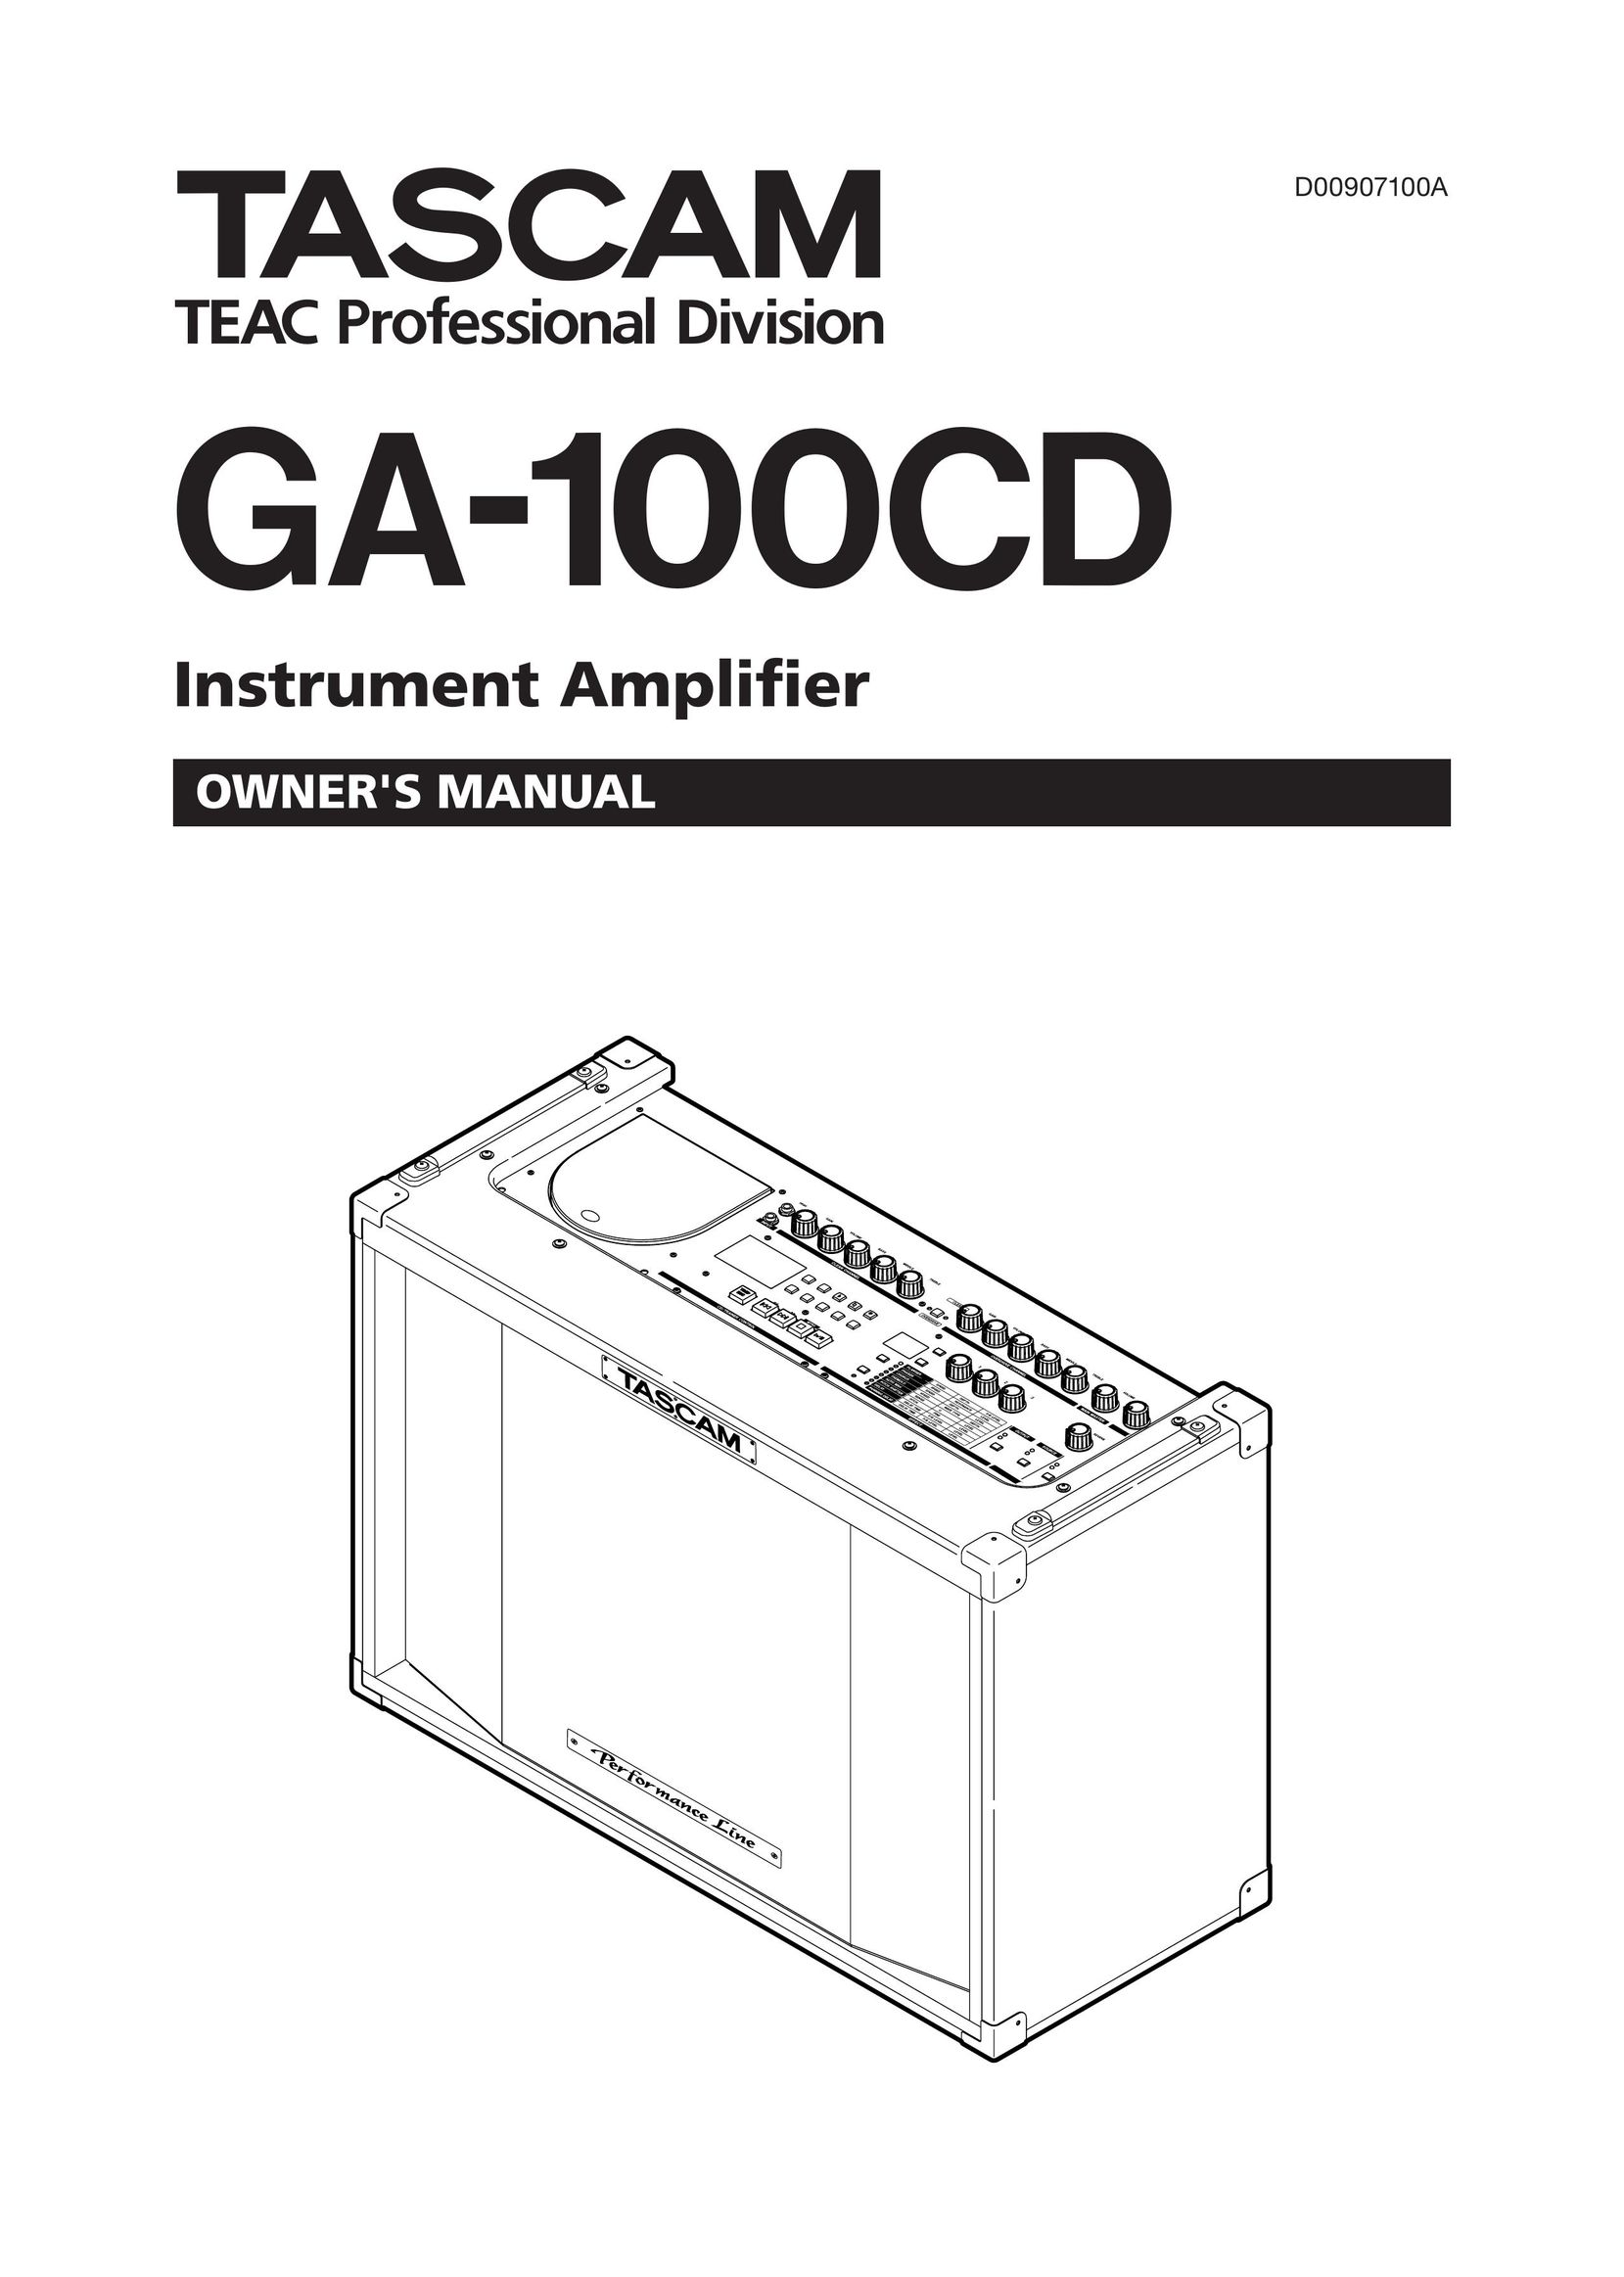 Tascam GA-100CD Stereo Amplifier User Manual